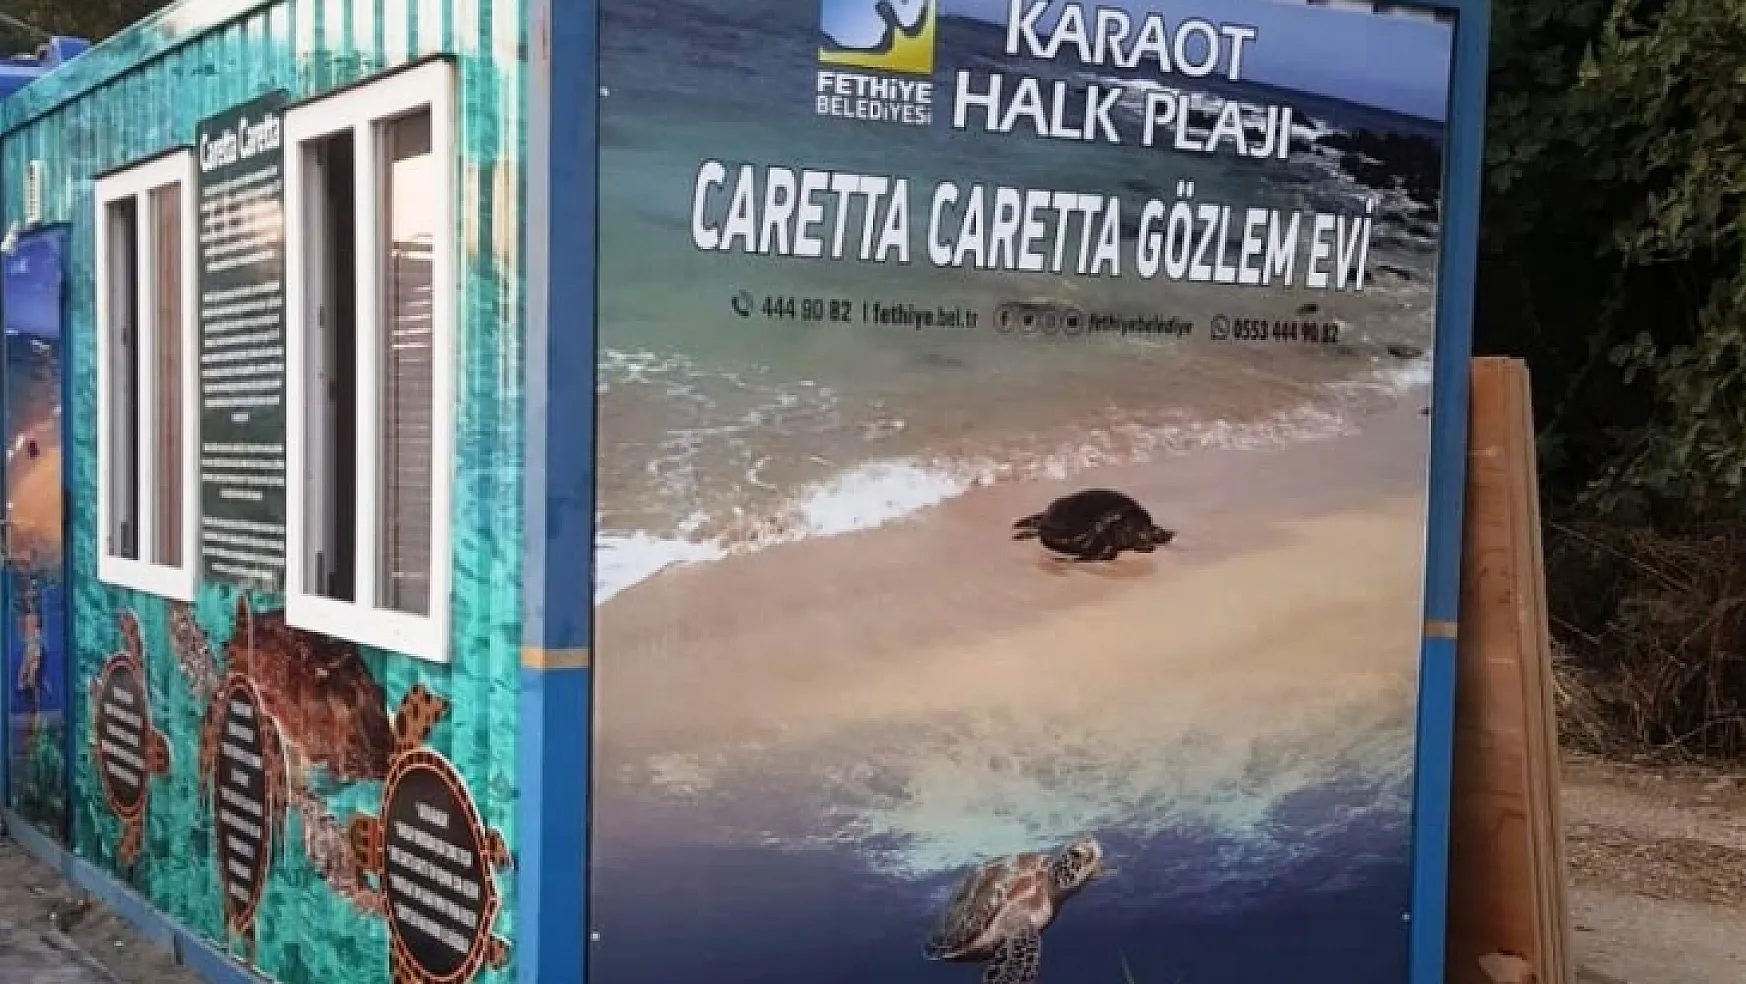 Karaot Halk Plajı'na Caretta Caretta Gözlem Evi Kuruldu